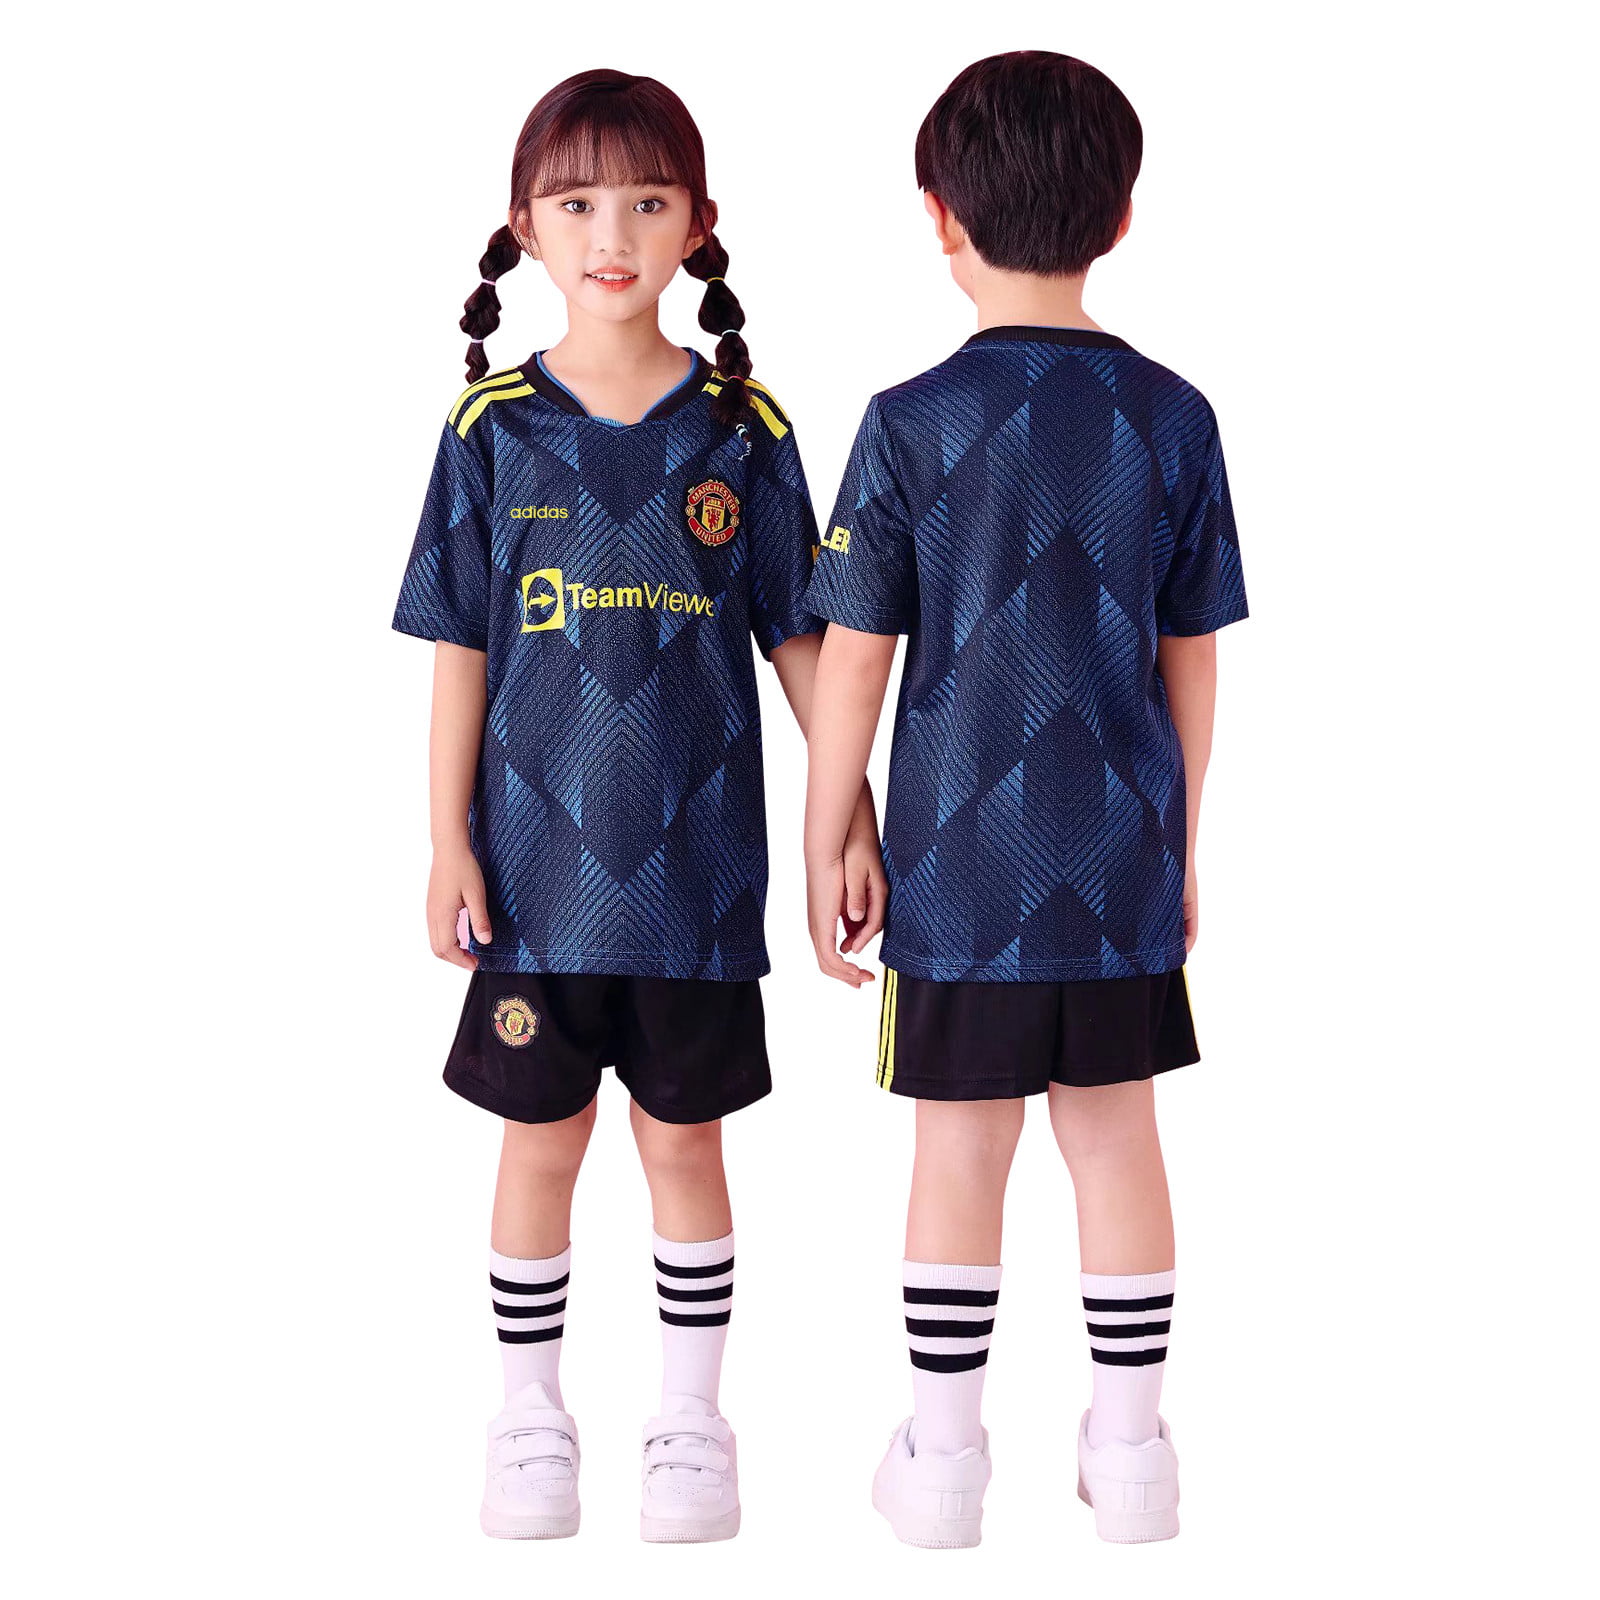 Black Away Kit Shorts,Socks,Towel,4 in 1 Gift Set 2021 Soccer Kit Kids Boys Girls Sport Suit Short Sleeve Jersey 